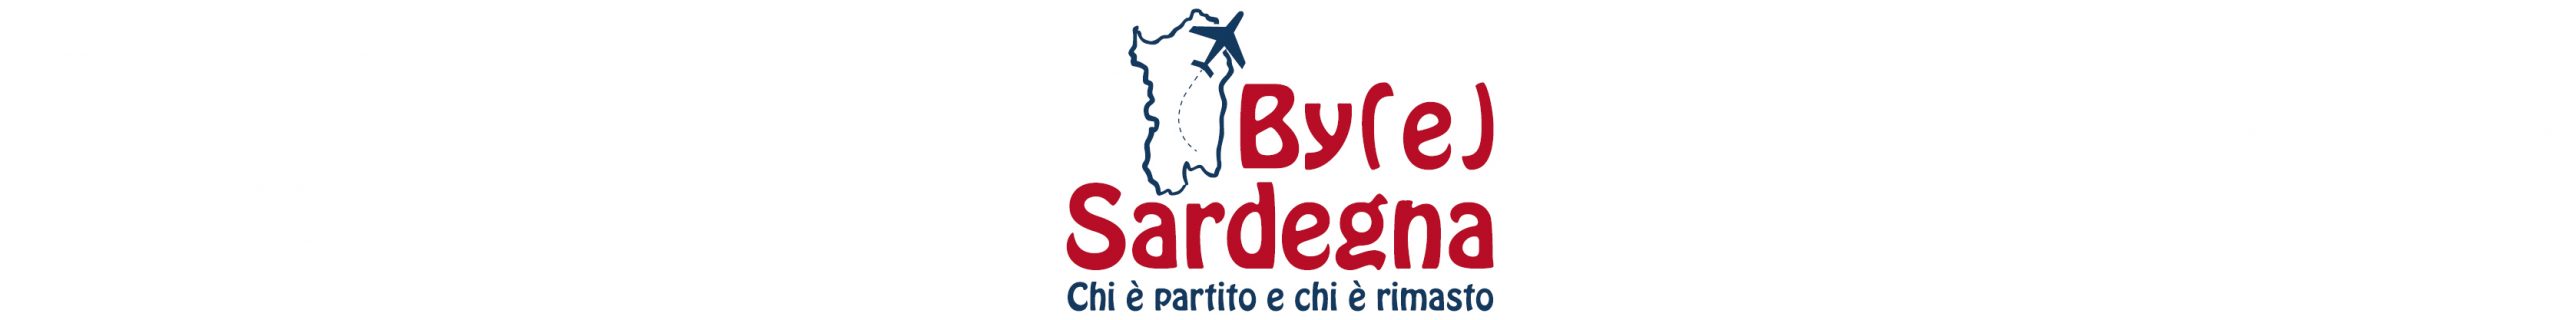 By(e) Sardegna